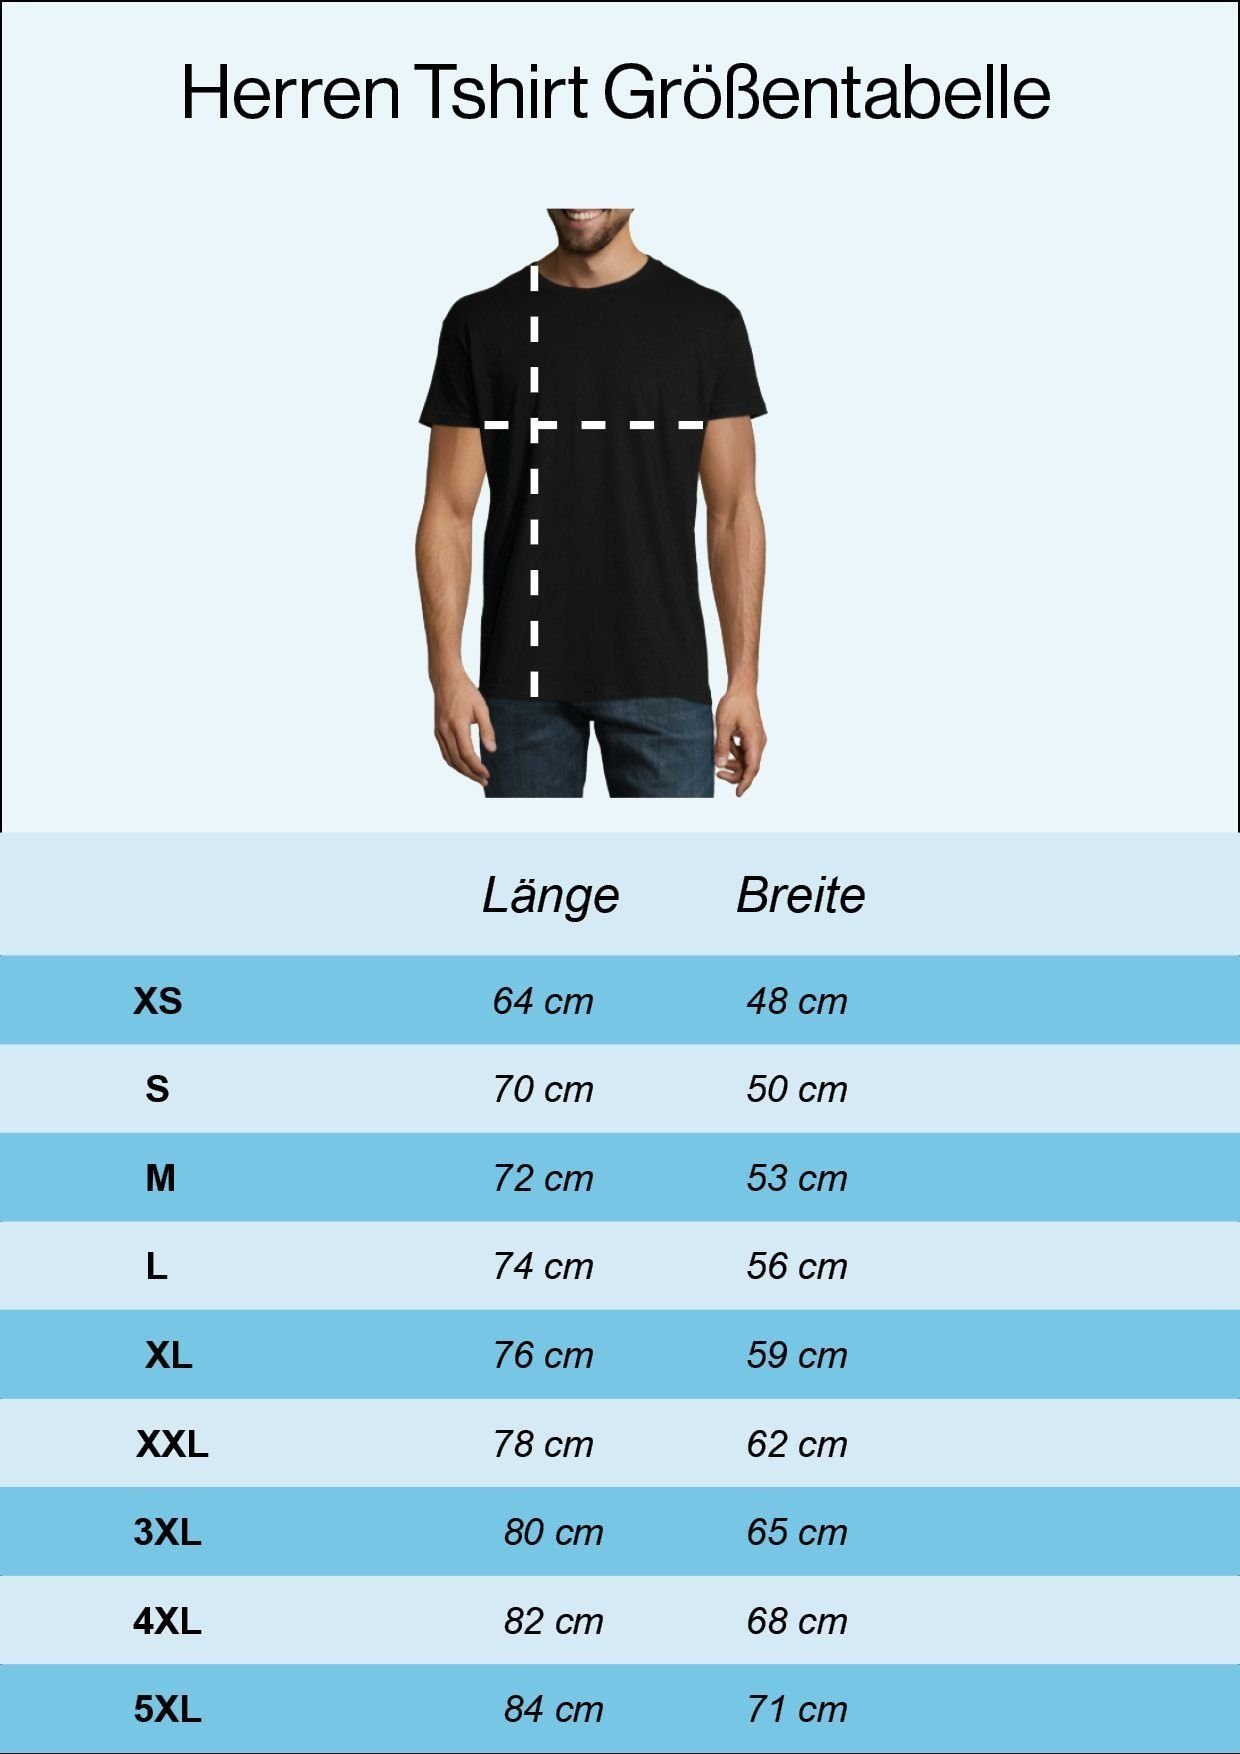 Youth Designz Print lustigem mit T-Shirt T-Shirt Ente Navyblau Spruch Rente Aufdruck Herren